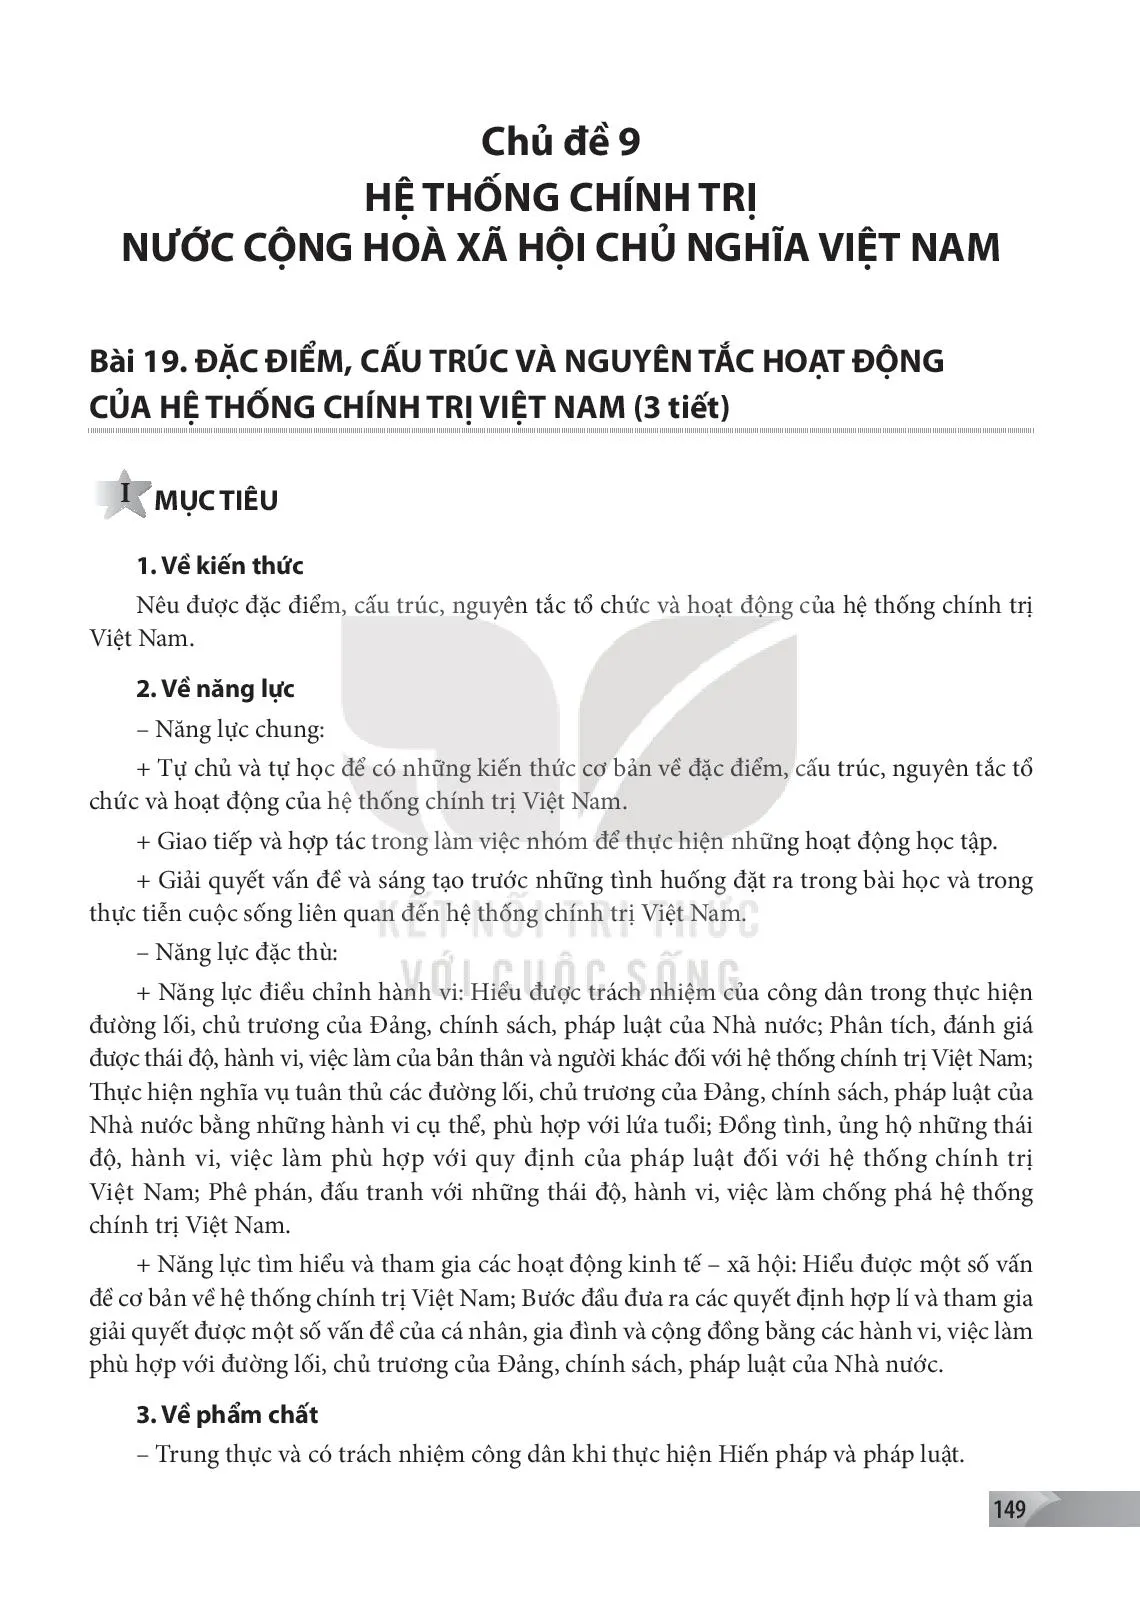 Bài 18: Nội dung cơ bản của Hiến pháp về bộ máy nhà nước Cộng hoà xã hội chủ nghĩa Việt Nam